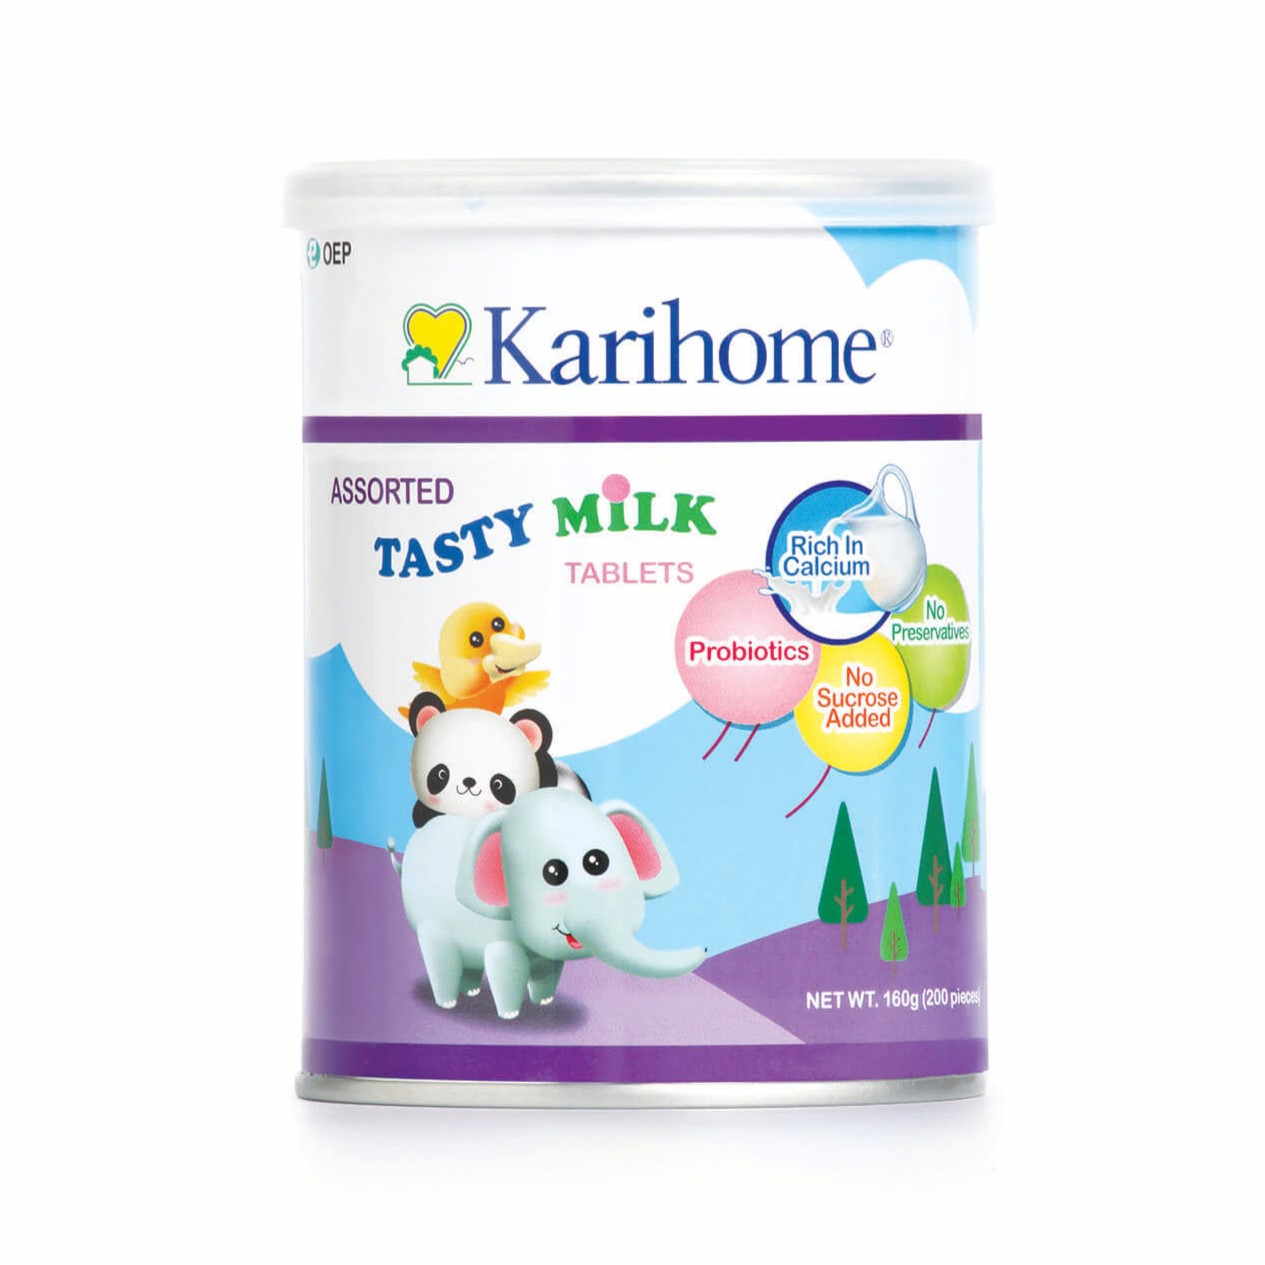 Karihome Tasty Milk Tablets - Assorted